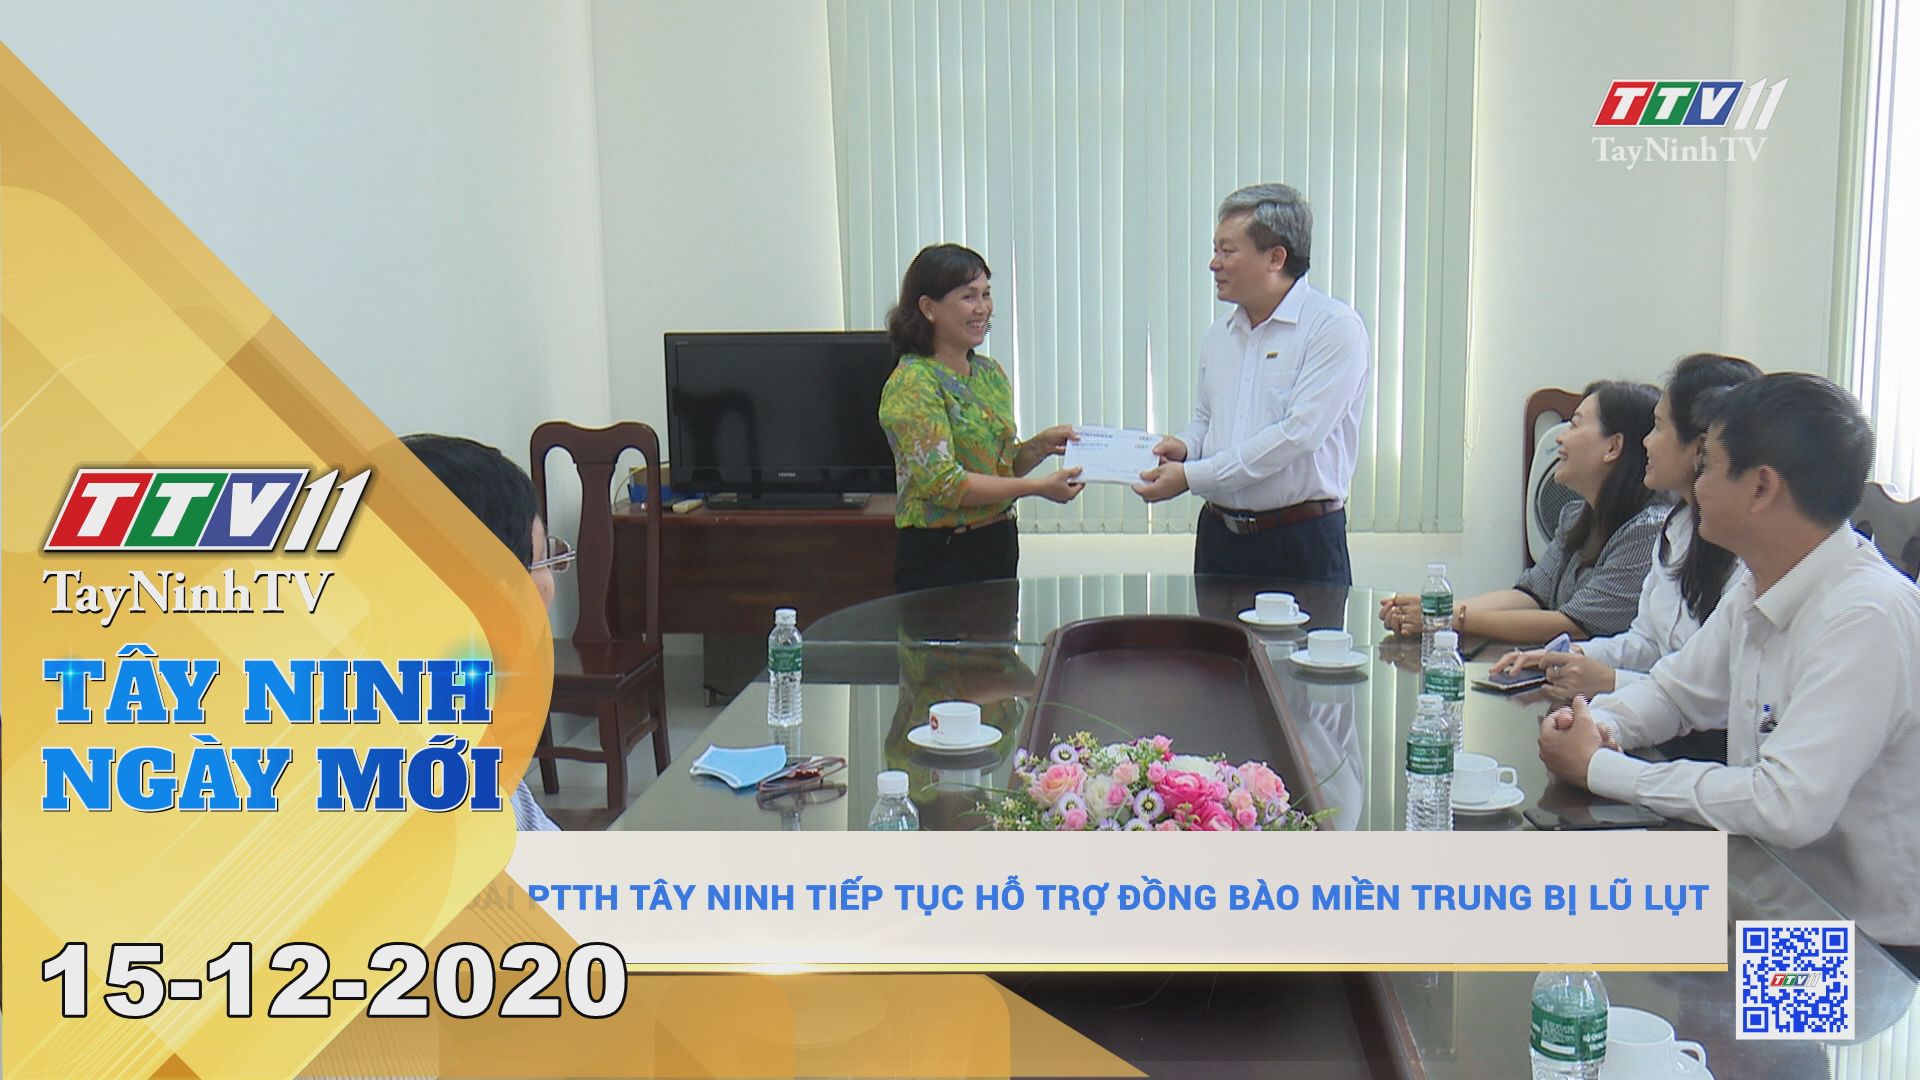 Tây Ninh Ngày Mới 15-12-2020 | Tin tức hôm nay | TayNinhTV 